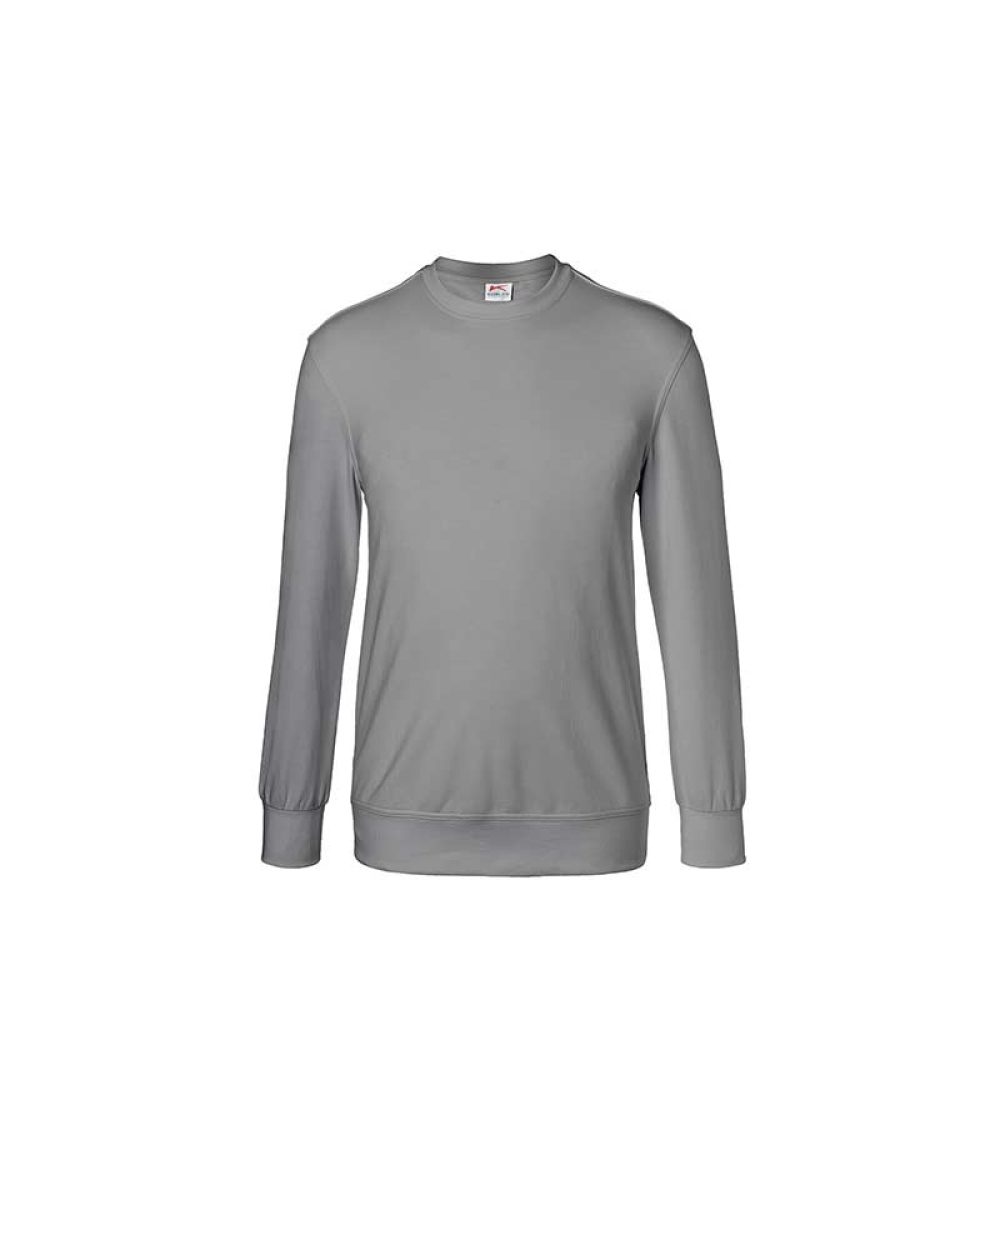 kuebler-sweatshirt-shirts-5023-6330-95